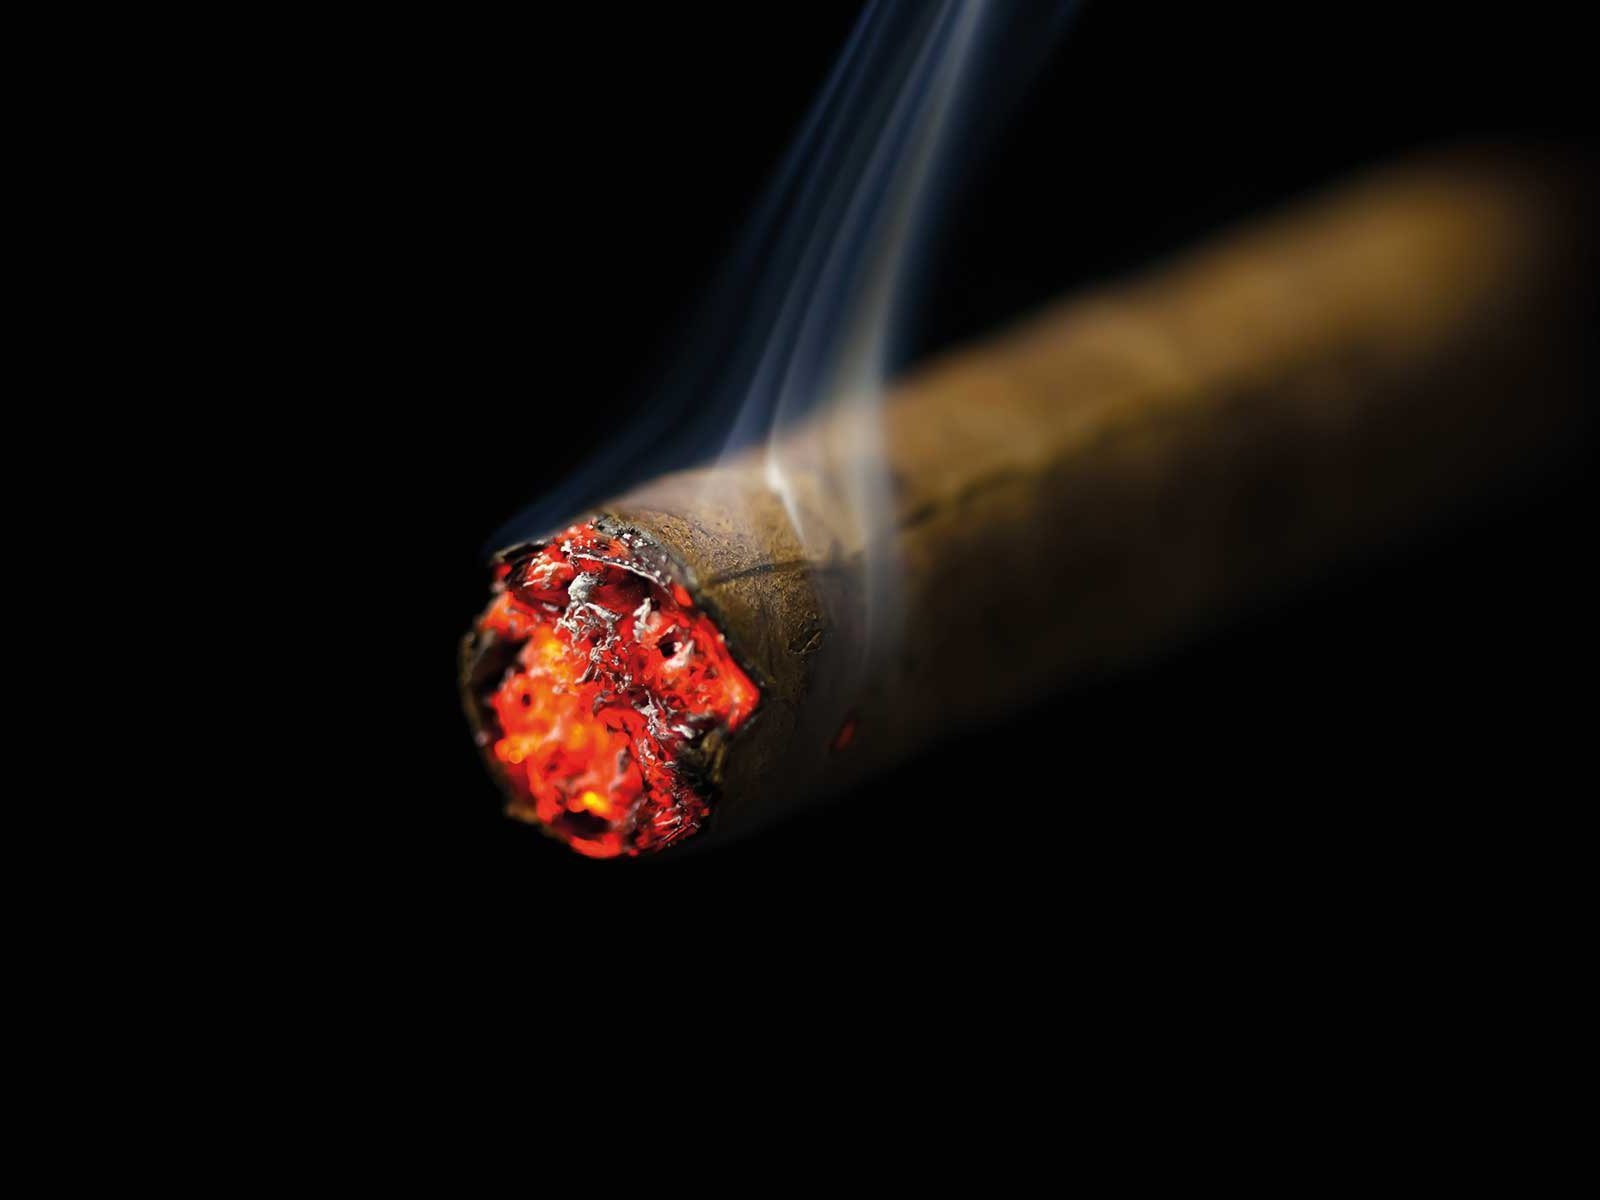 Luxus-Zigarren: Die Glut wahrer Leidenschaft - Falstaff